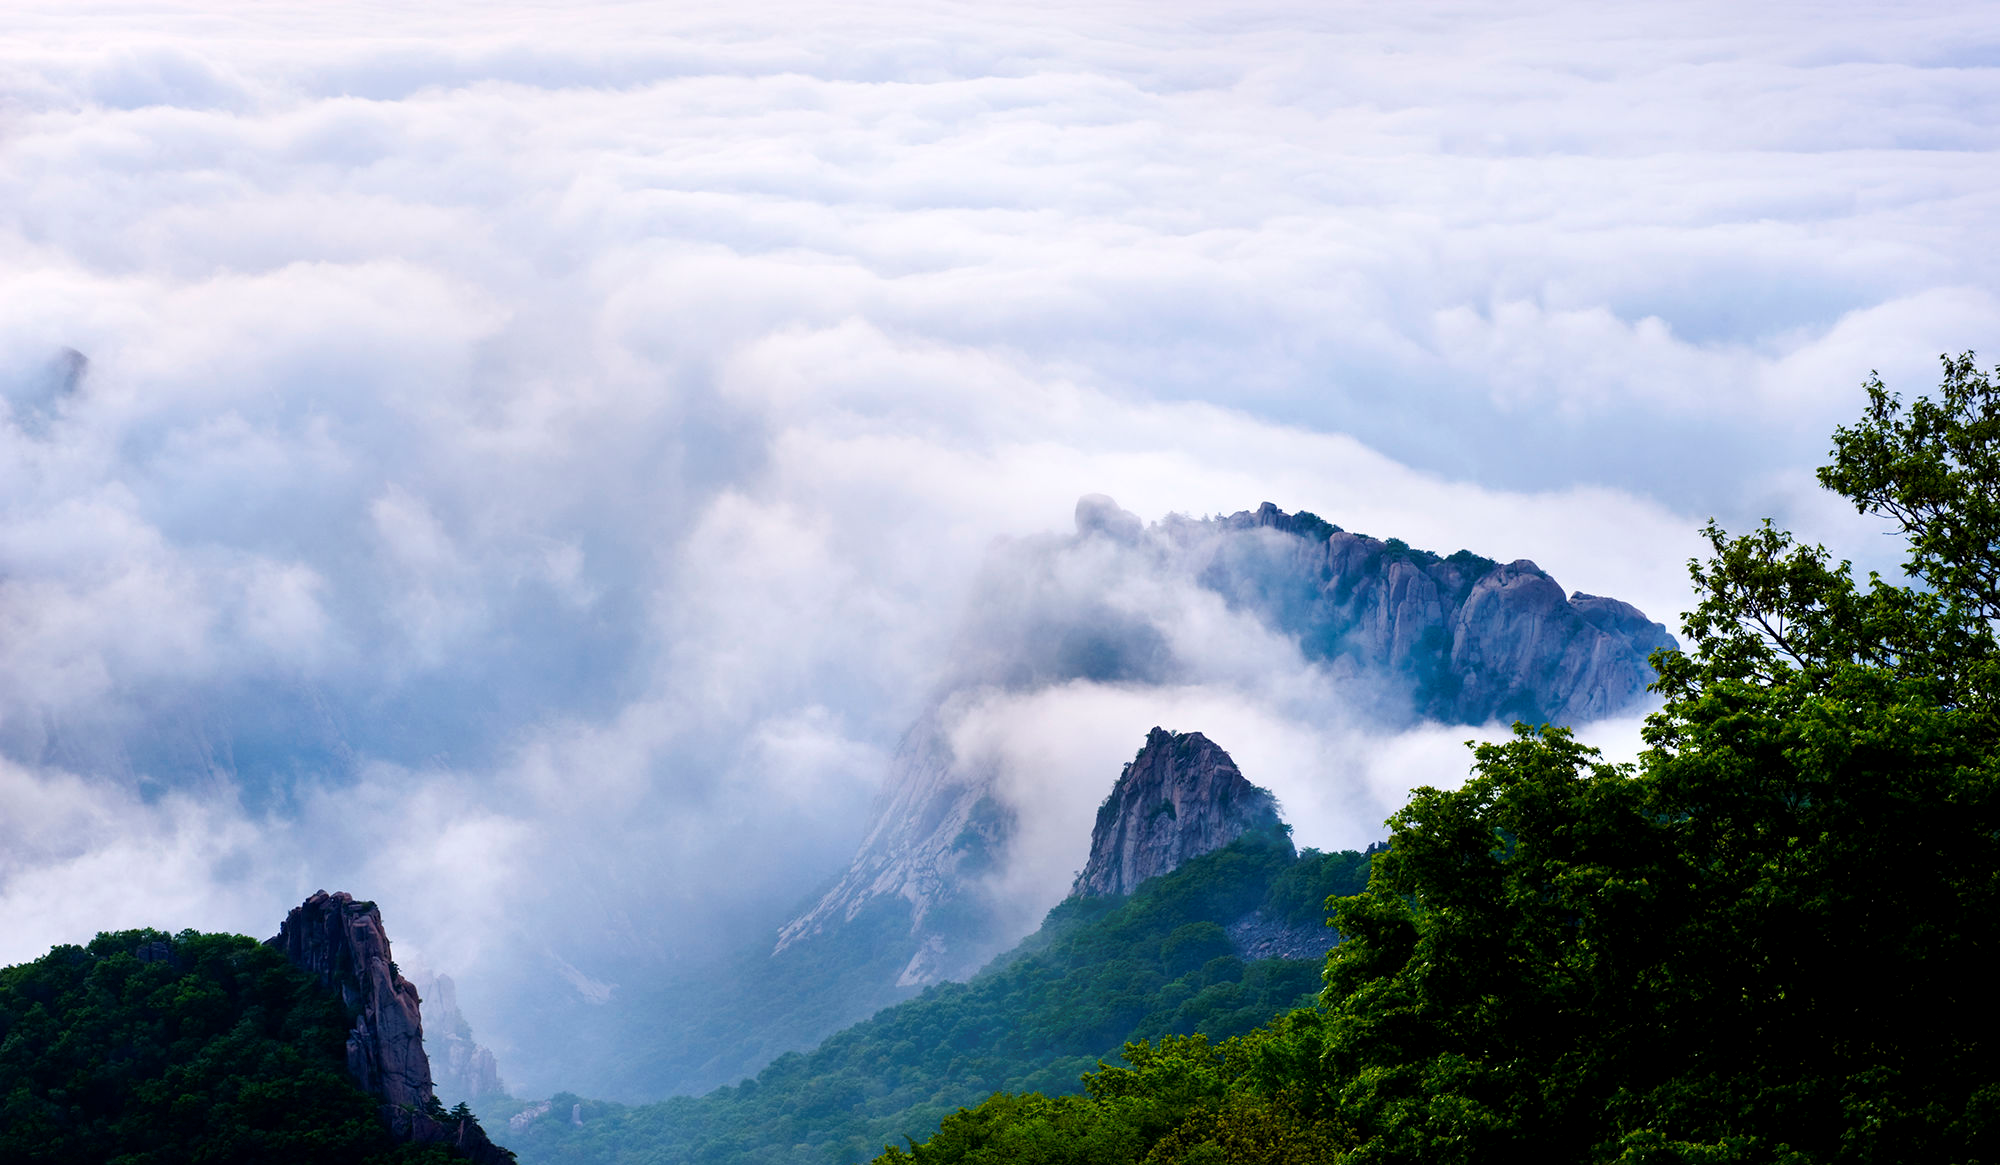 祖山,塞北小黄山,一座神秘而美丽的山峰